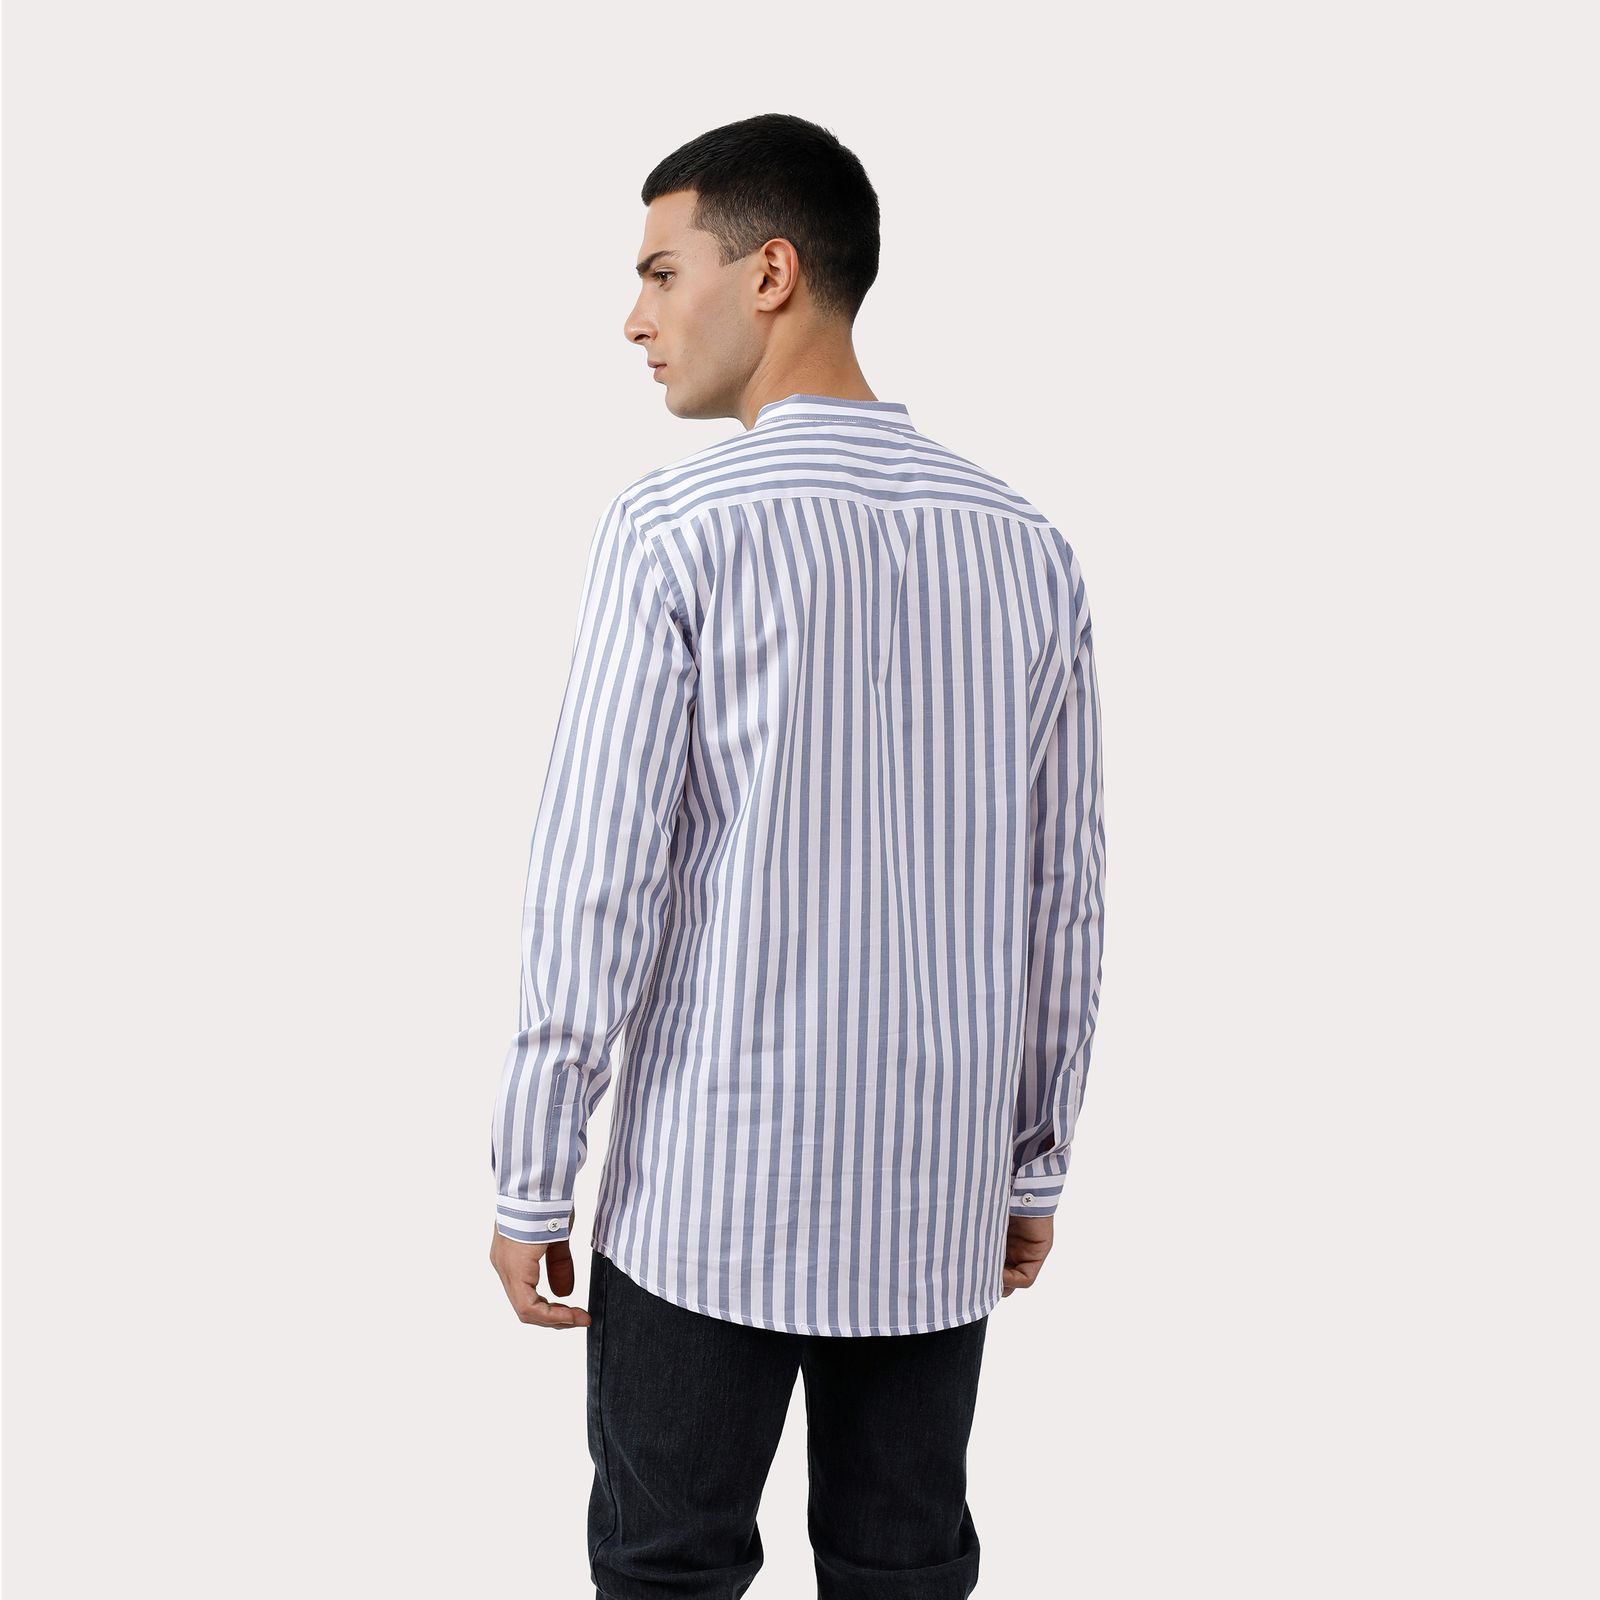 پیراهن آستین بلند مردانه پاتن جامه مدل 102721020010445 -  - 8